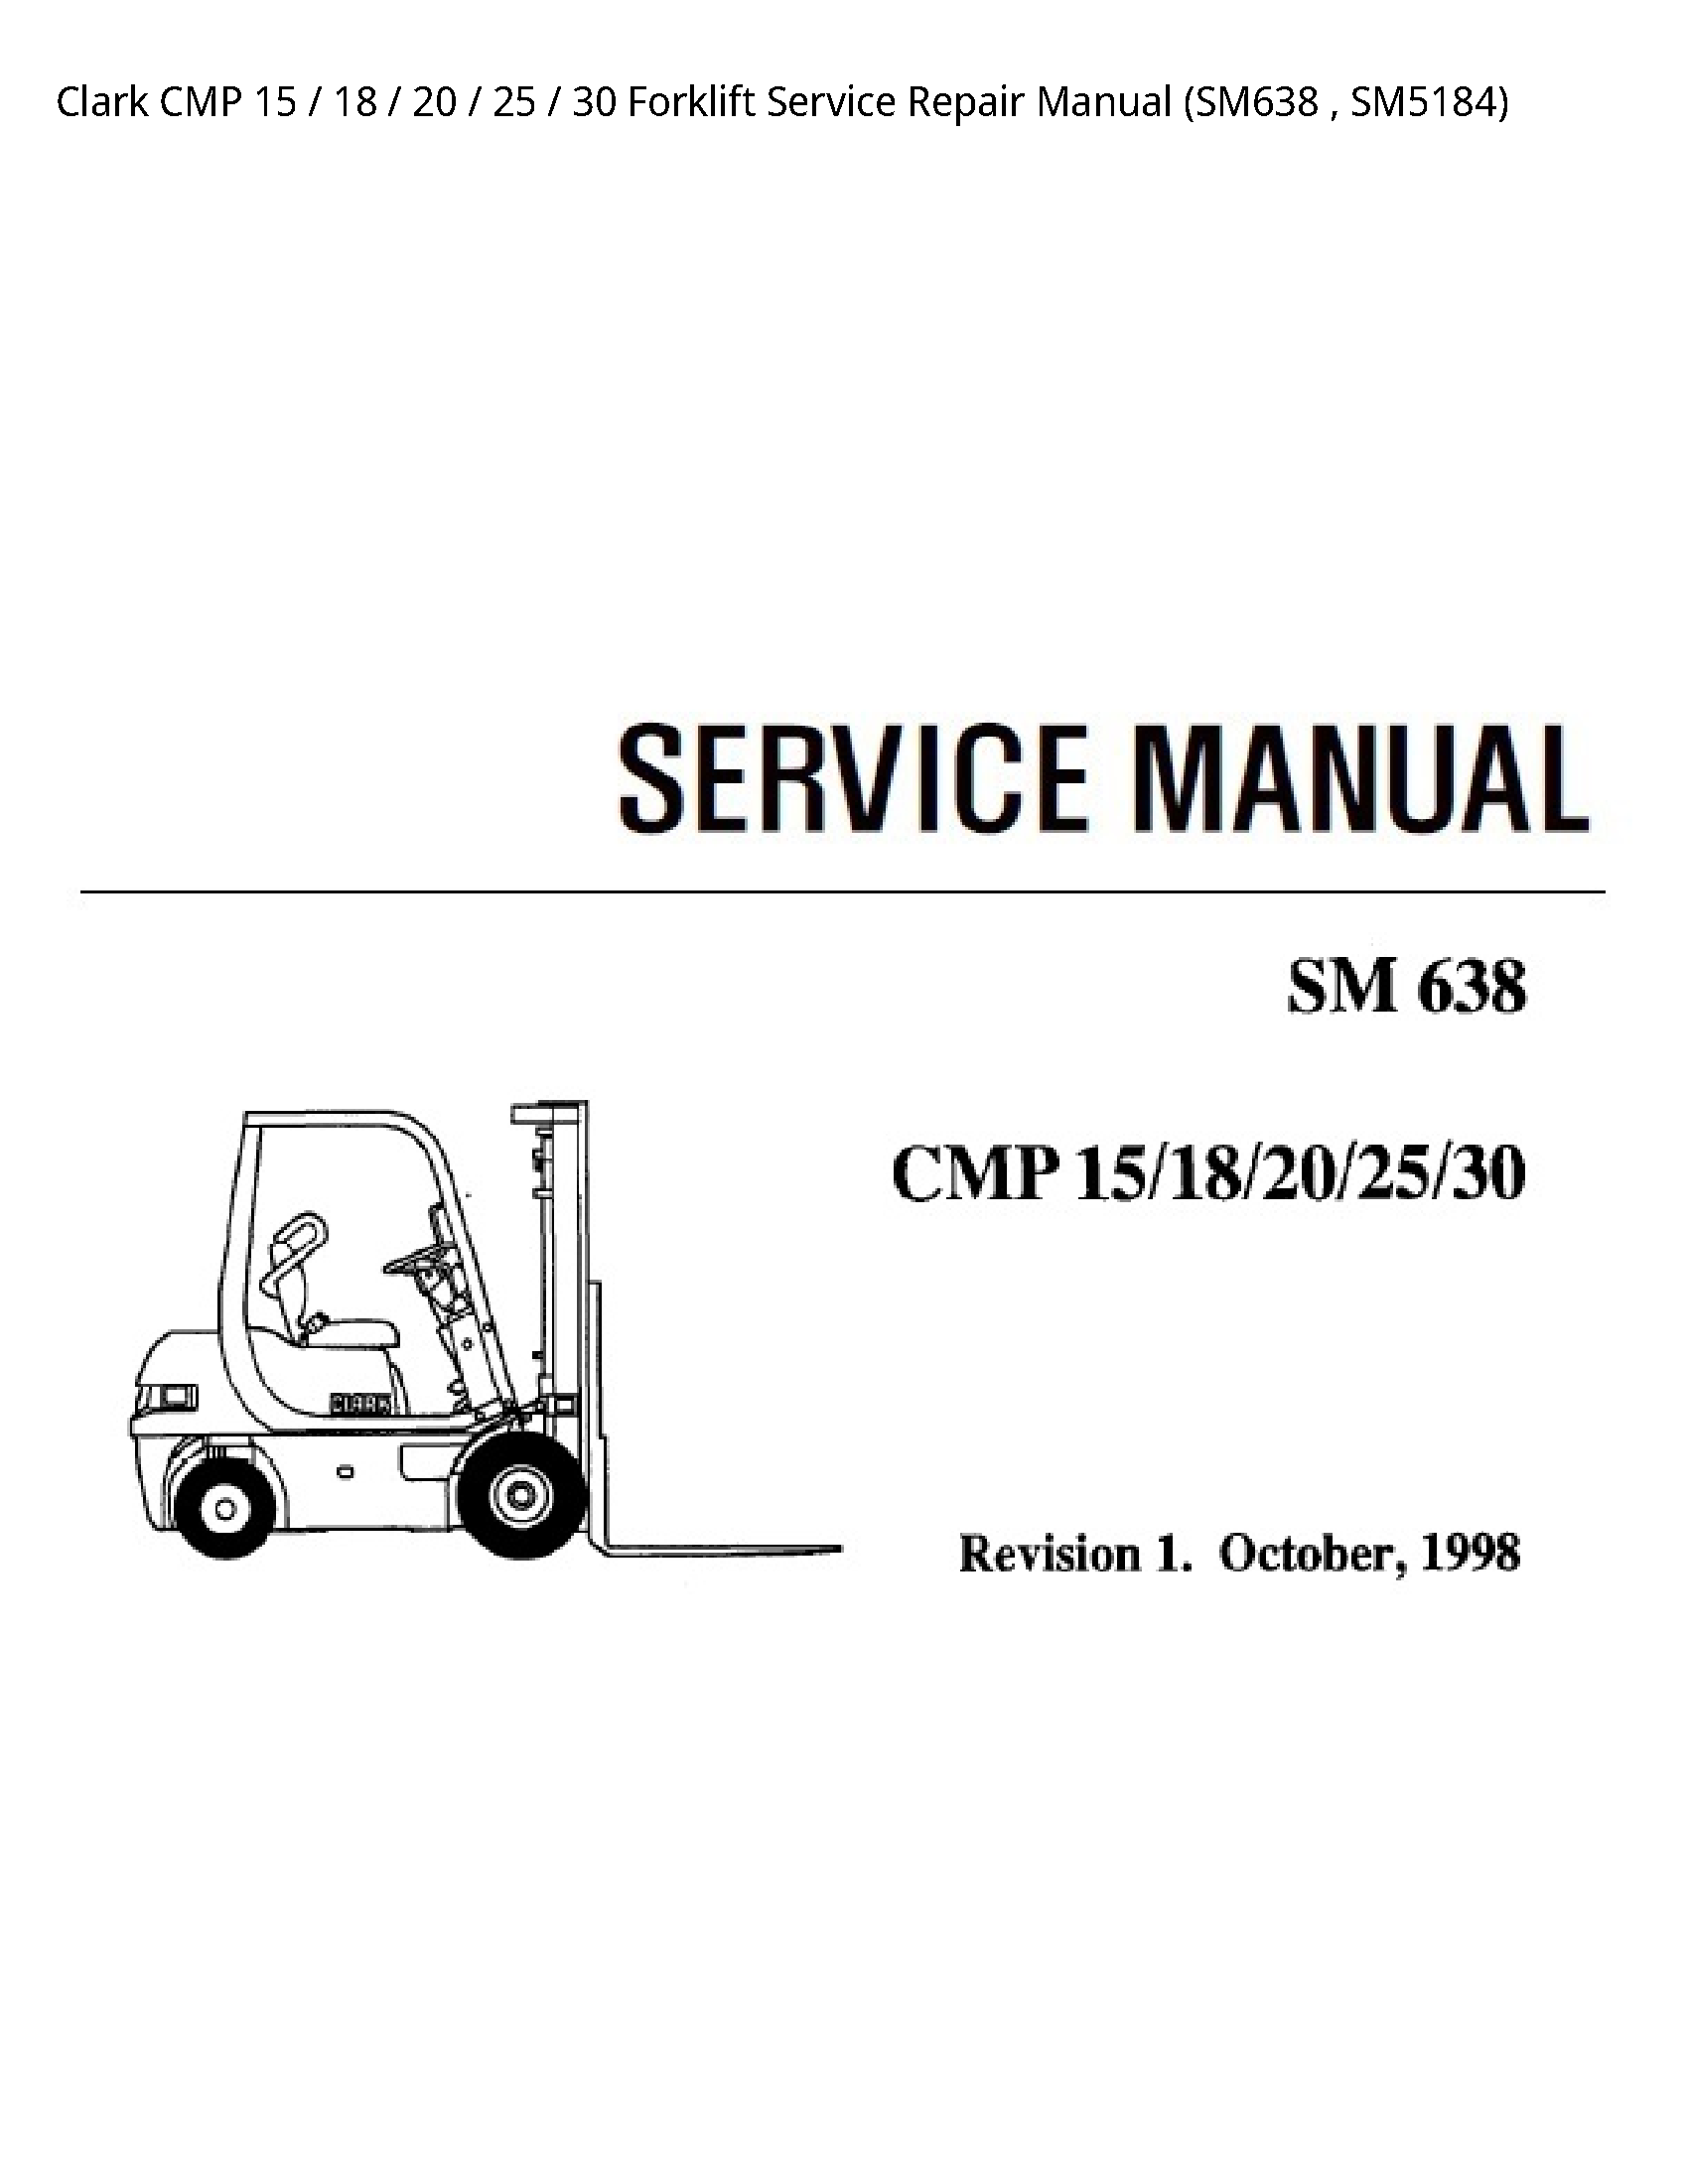 Clark 15 CMP Forklift manual